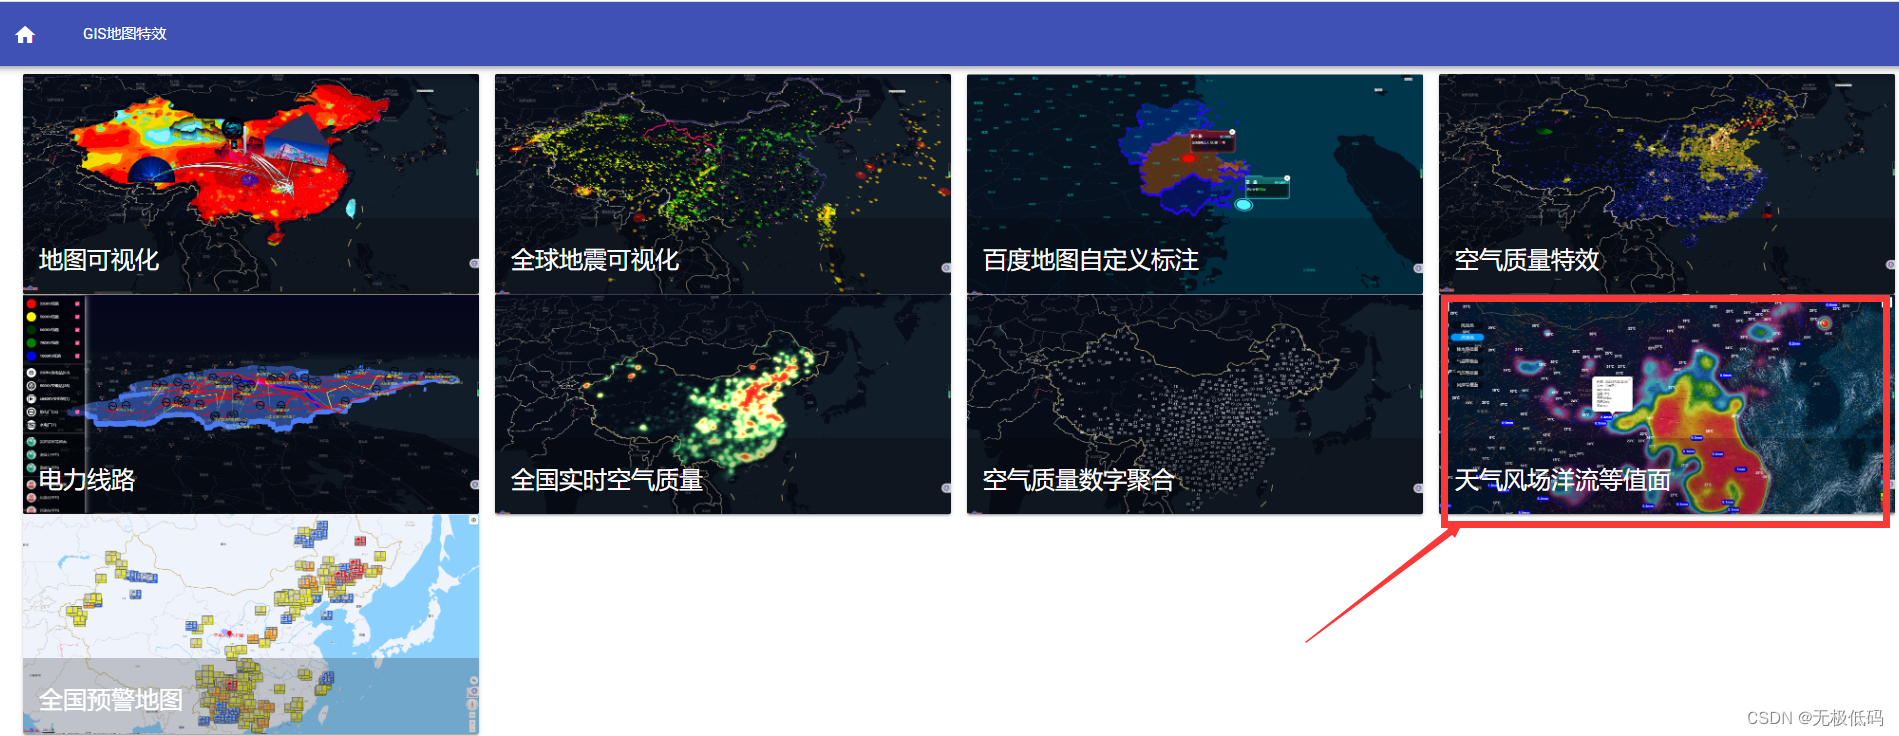 使用leafletjs实现地图洋流、风场气象6要素地图标注、等值面图